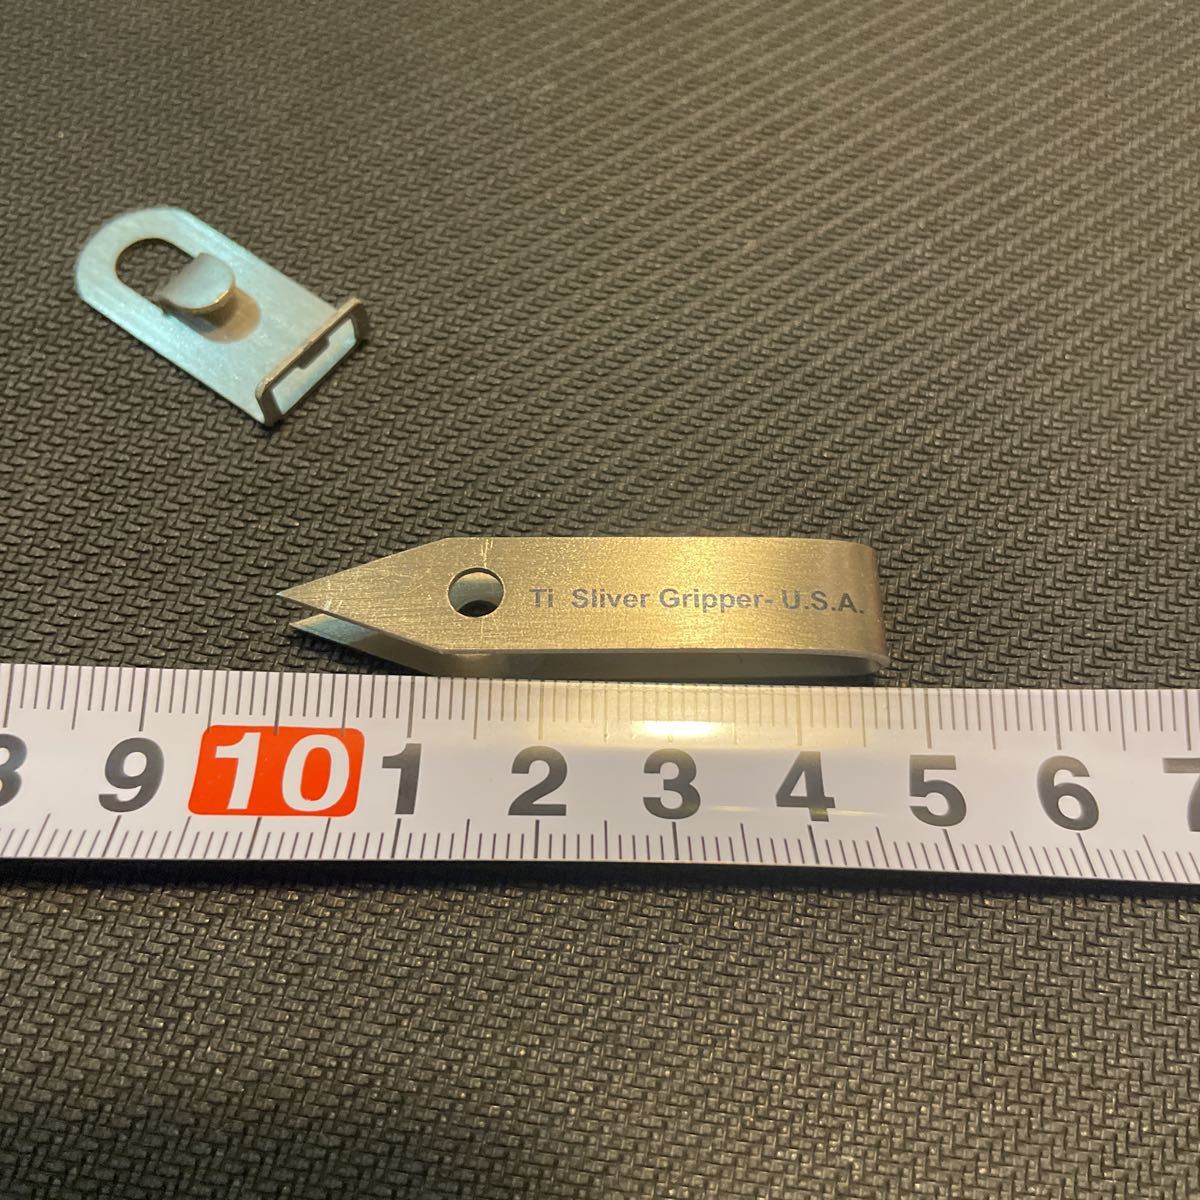 Titanium keychain tweezer